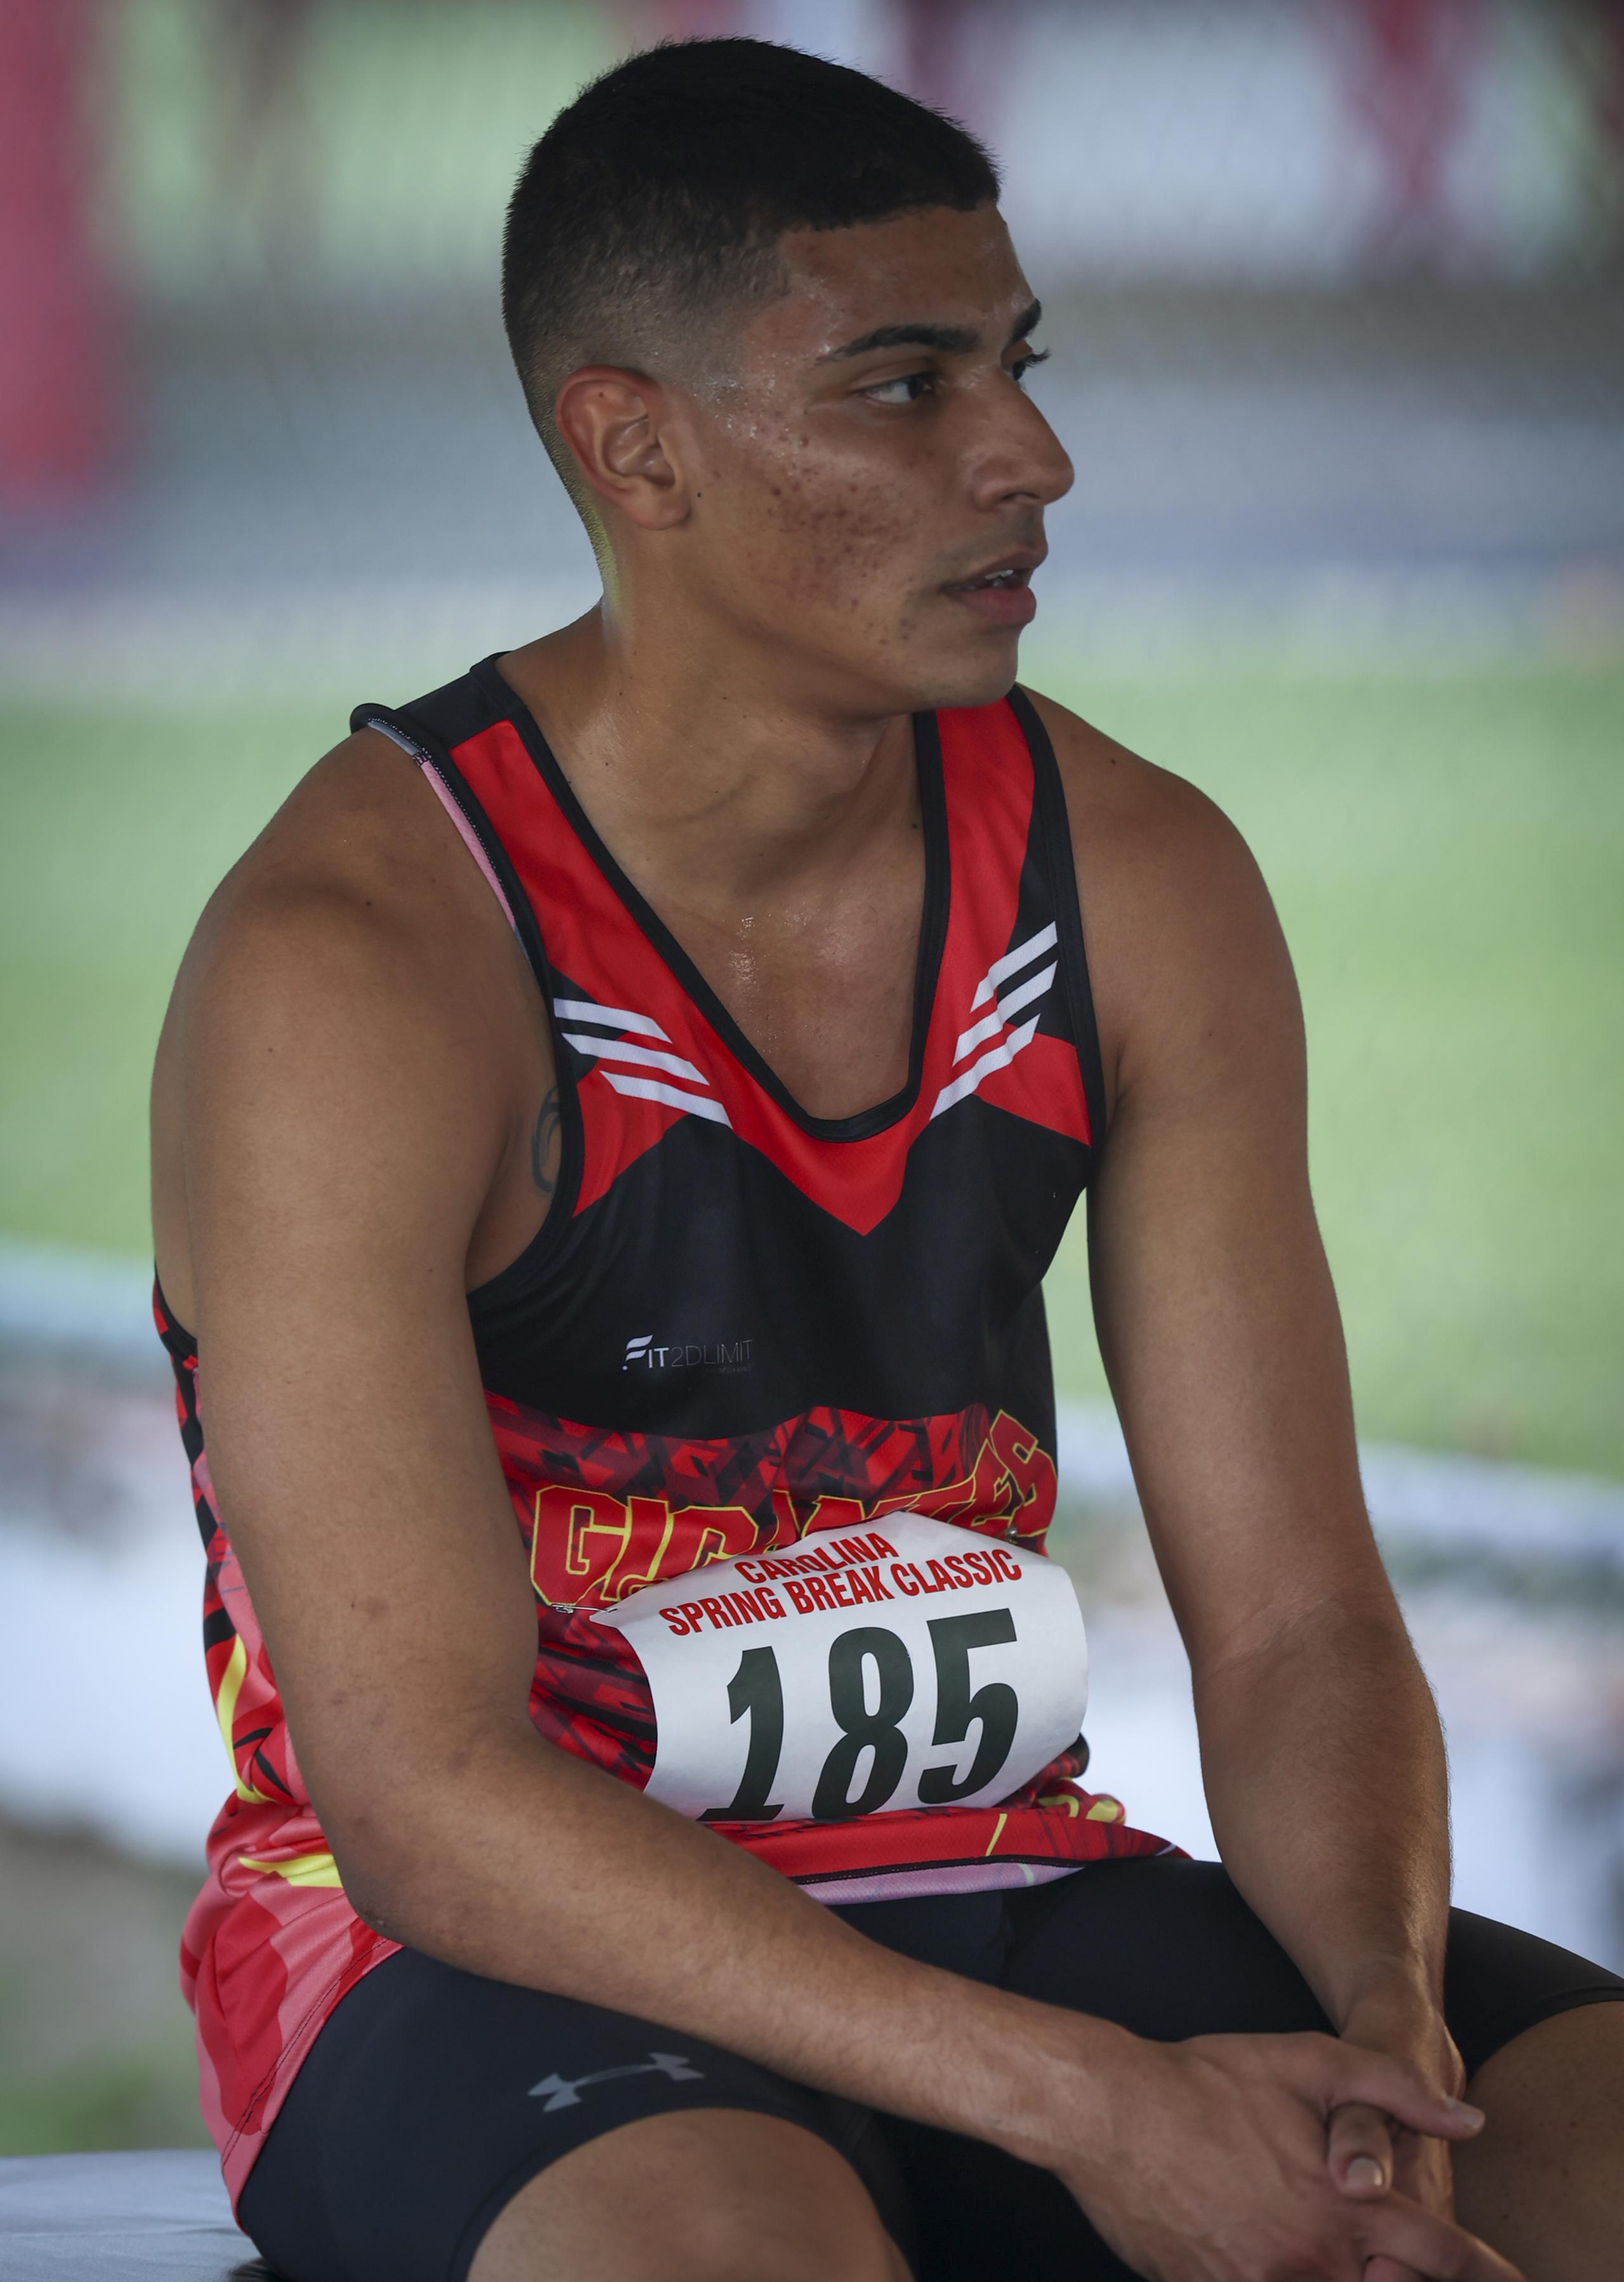 Lo próximo en la agenda de Ryan Sánchez es conseguir invitaciones a otras competencias antes de entrar de lleno a su especialidad en los 800 metros.